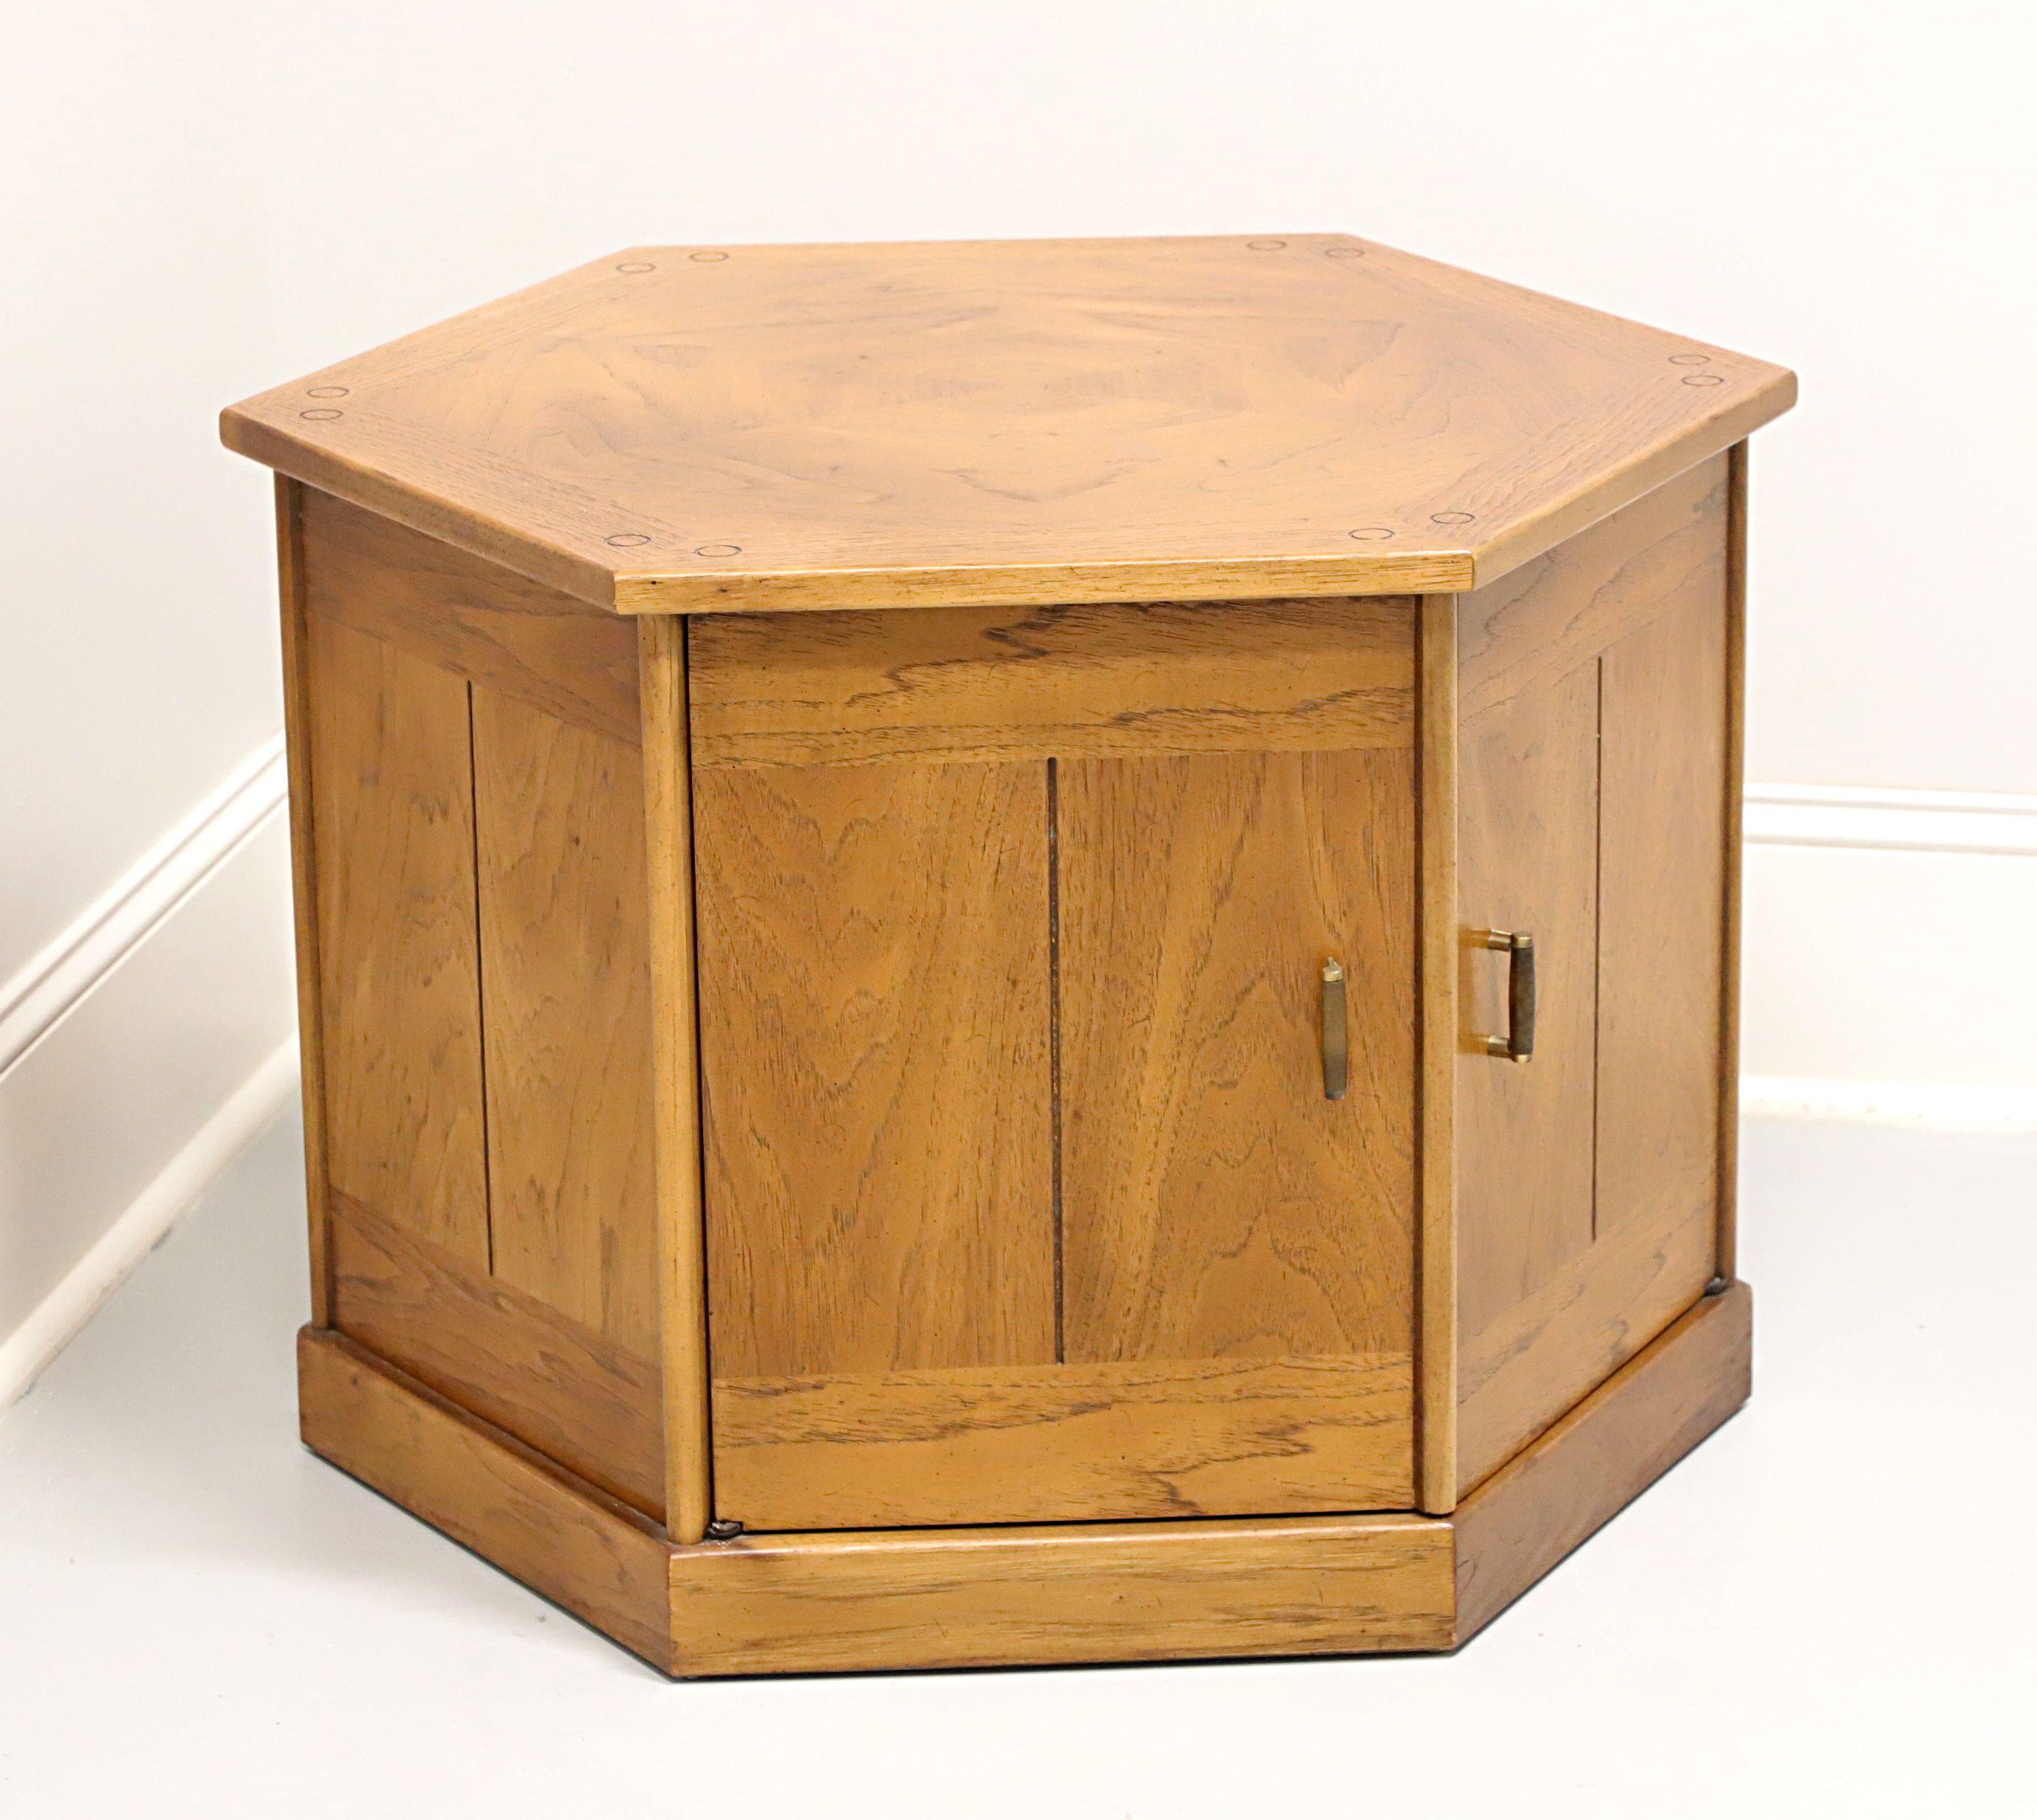 Table d'appoint en forme d'armoire hexagonale de Drexel, de la Collection Benchcraft, datant du milieu du 20e siècle. Pécan avec une finition légèrement vieillie, un plateau incrusté et bagué, et une quincaillerie en laiton. Comprend une armoire à